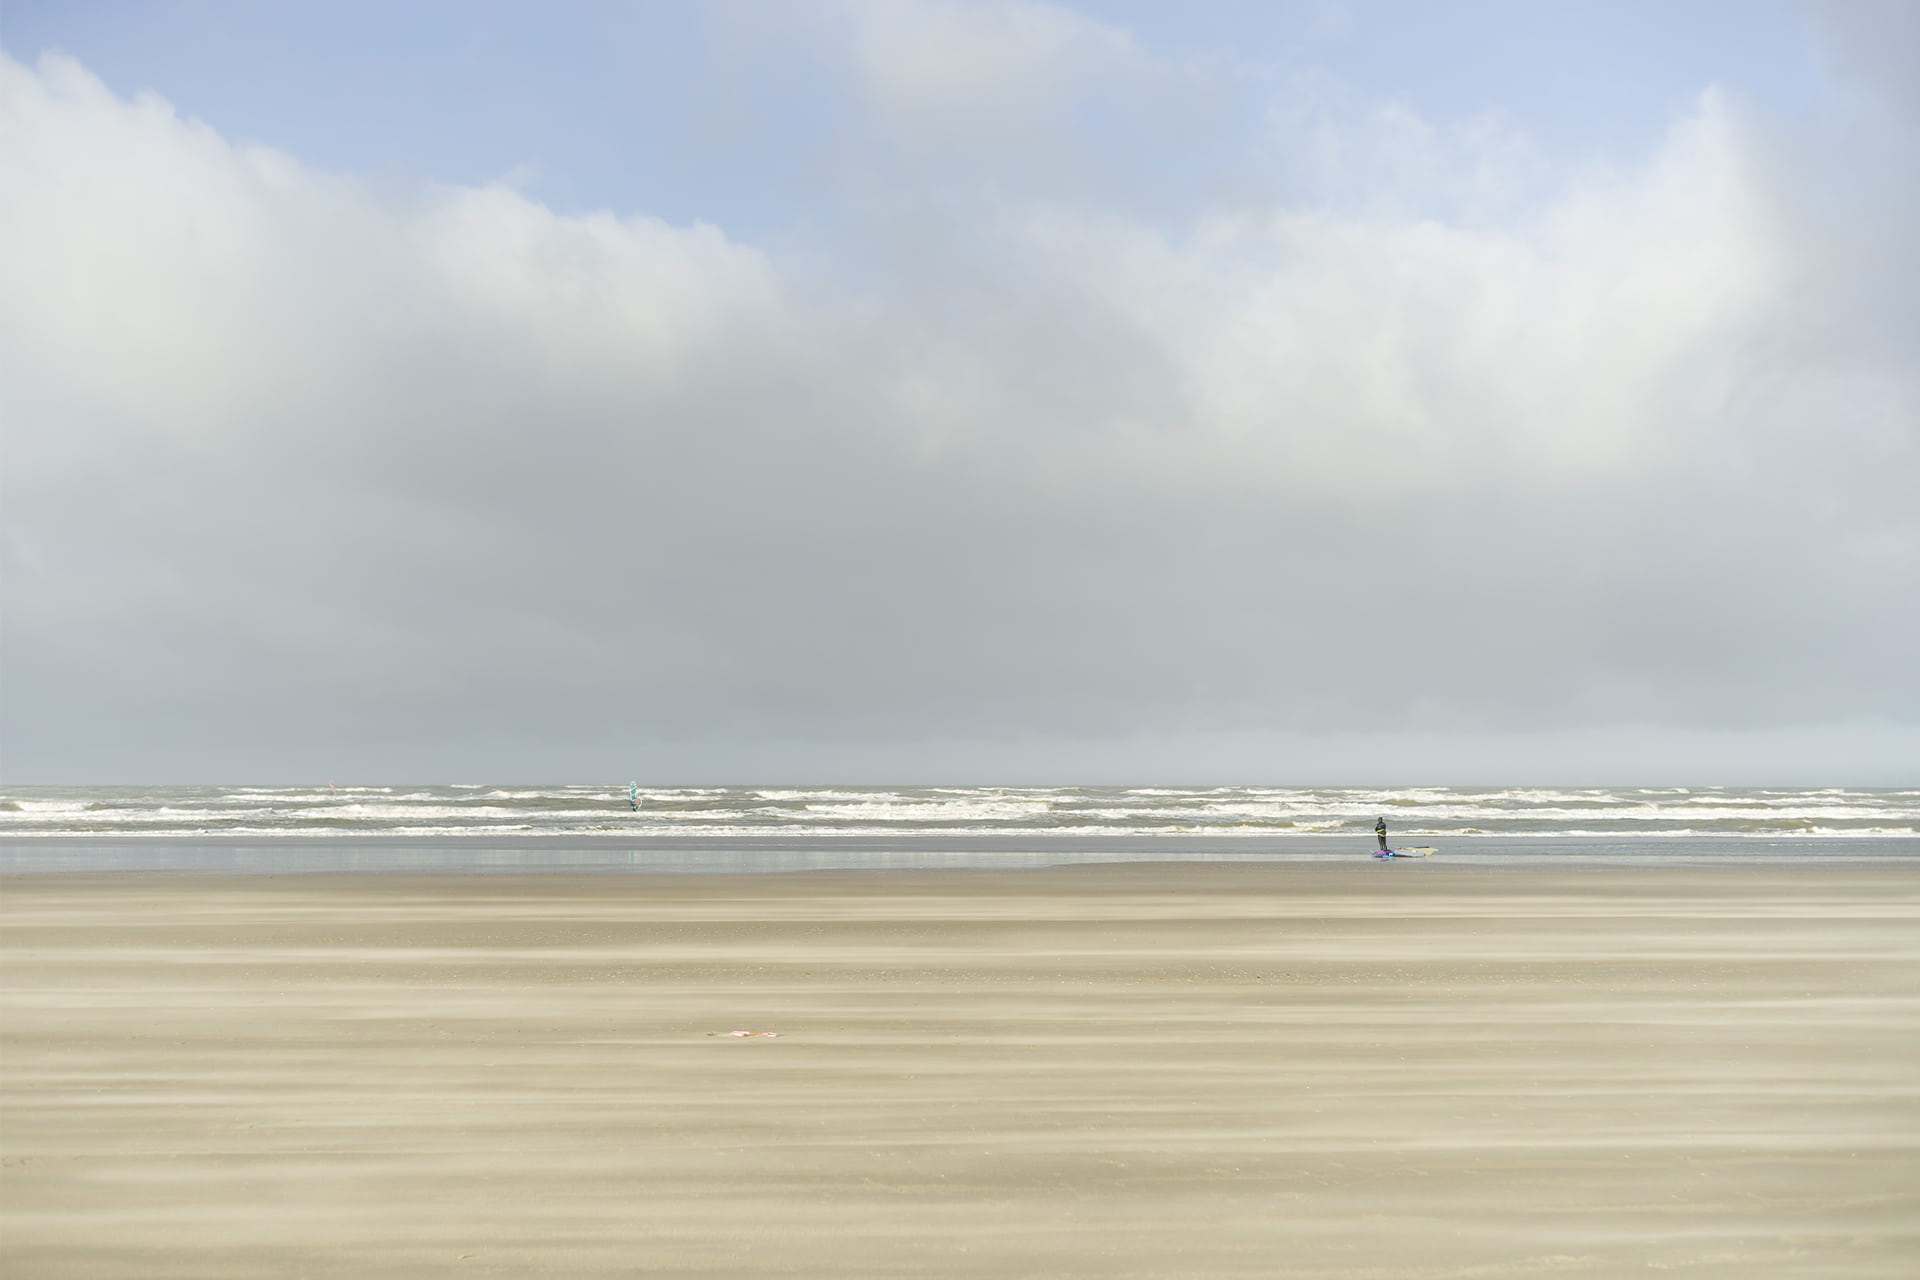 Strand Wijk aan Zee Foto door Hanno Groen